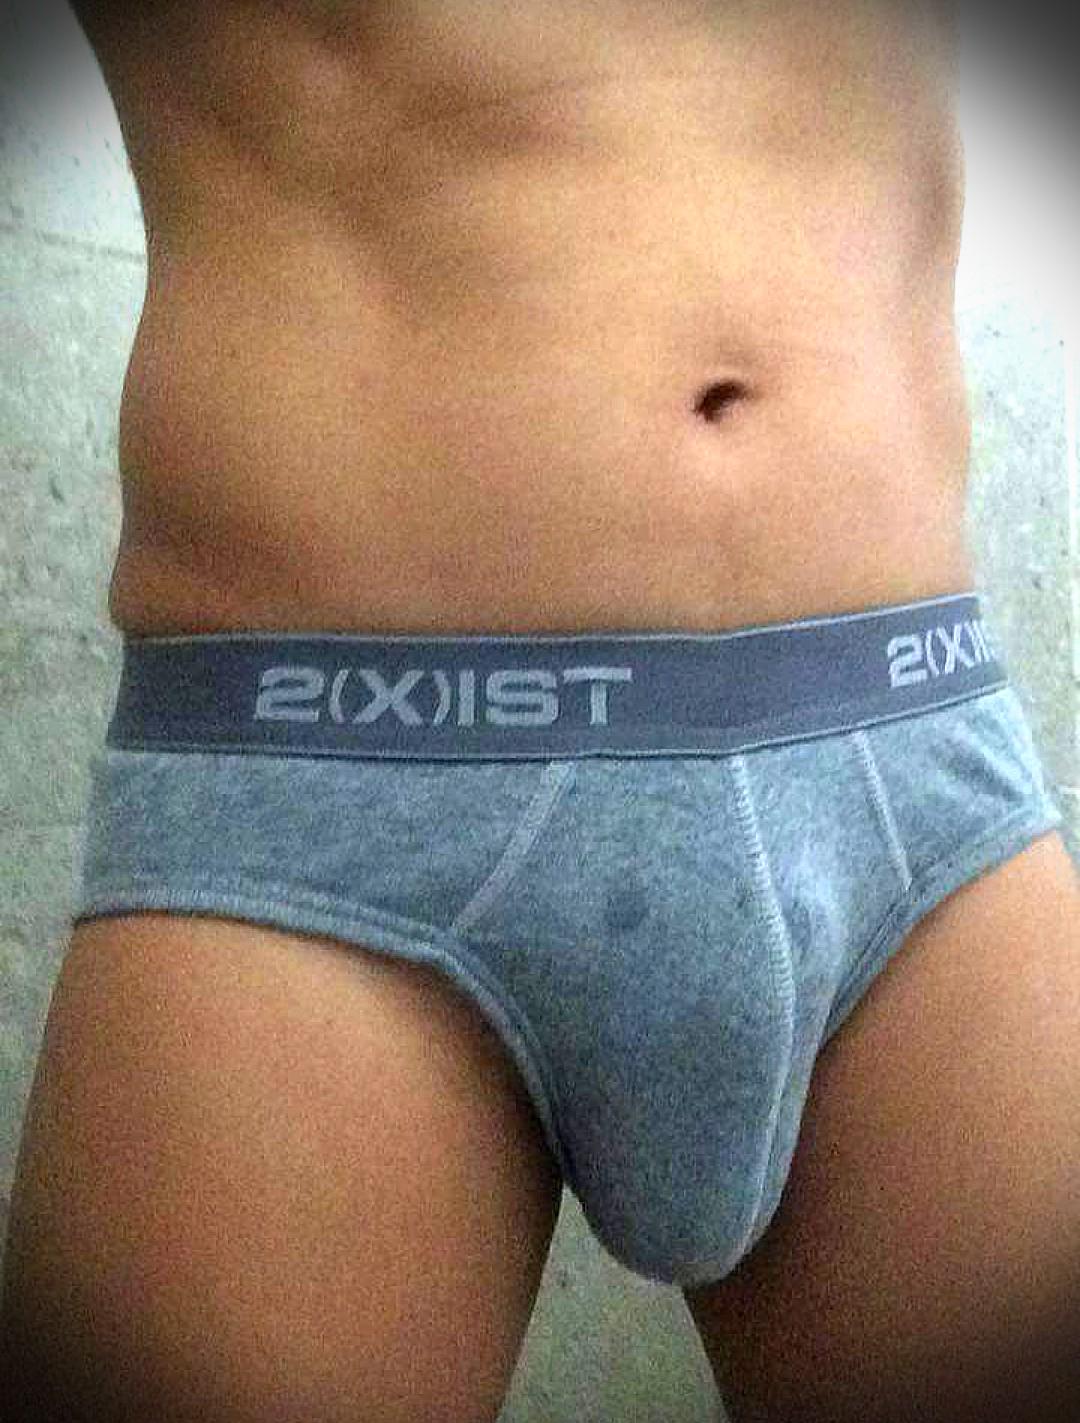 2(X)IST Briefs underwear, Men's Fashion, Bottoms, New Underwear on